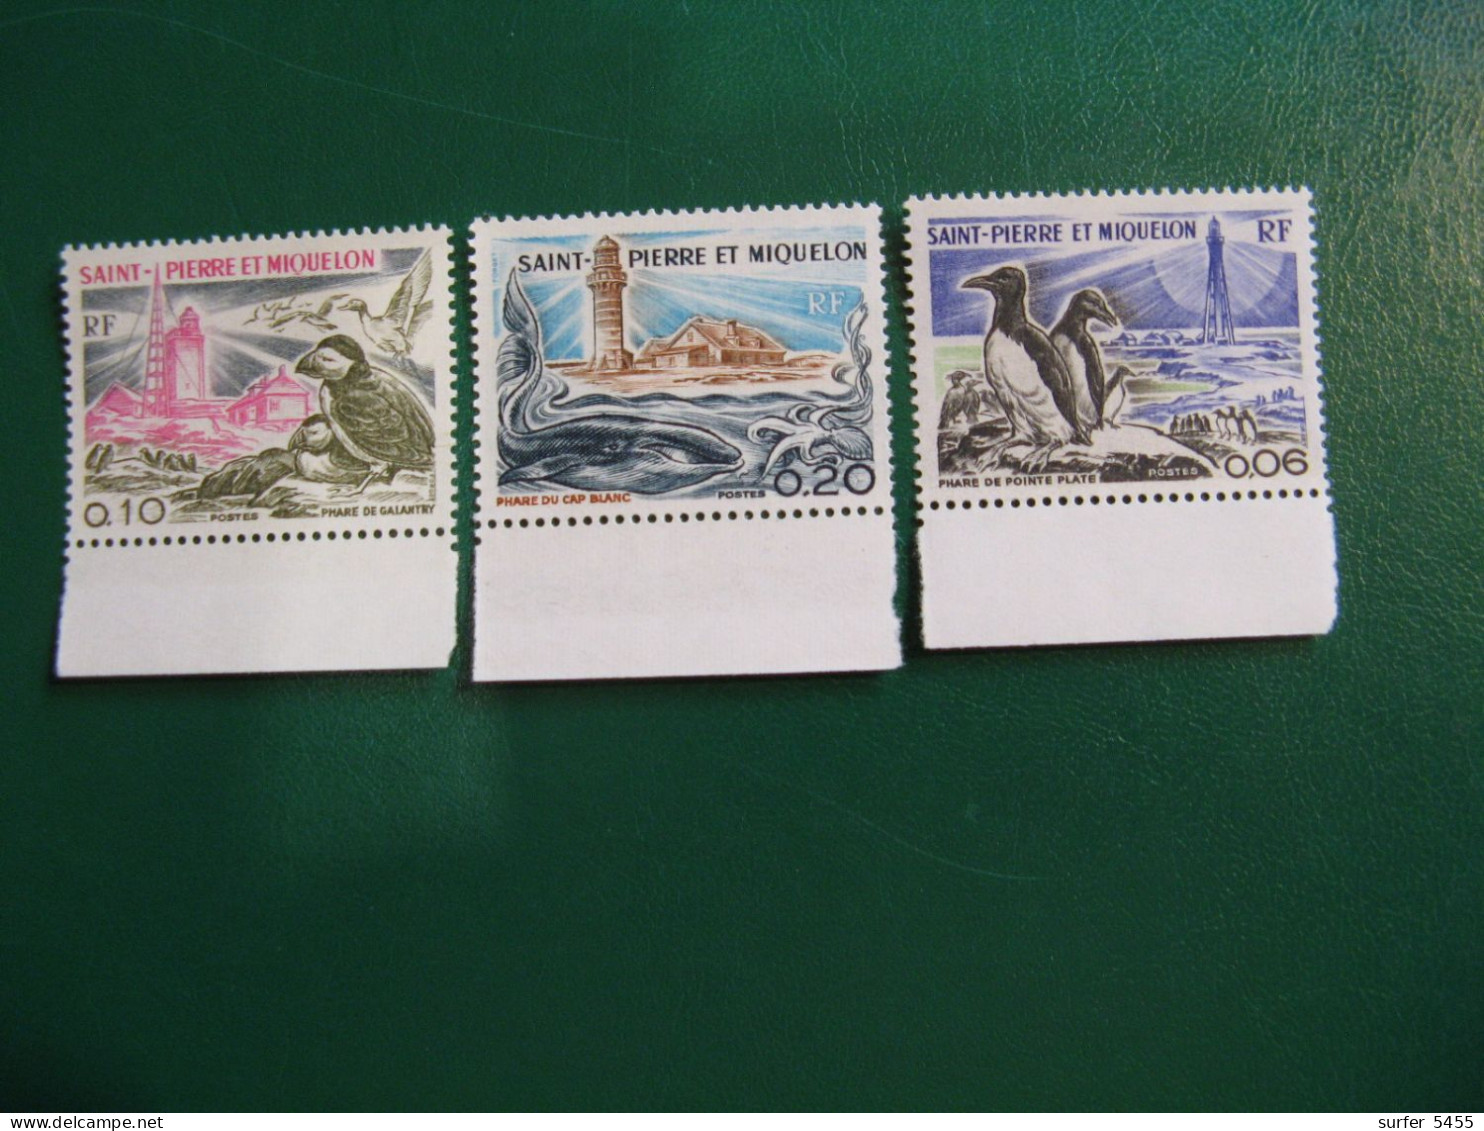 SAINT PIERRE ET MIQUELON YVERT POSTE ORDINAIRE N° 445/447 NEUFS** LUXE - MNH -  COTE 14,50 EUROS - Unused Stamps